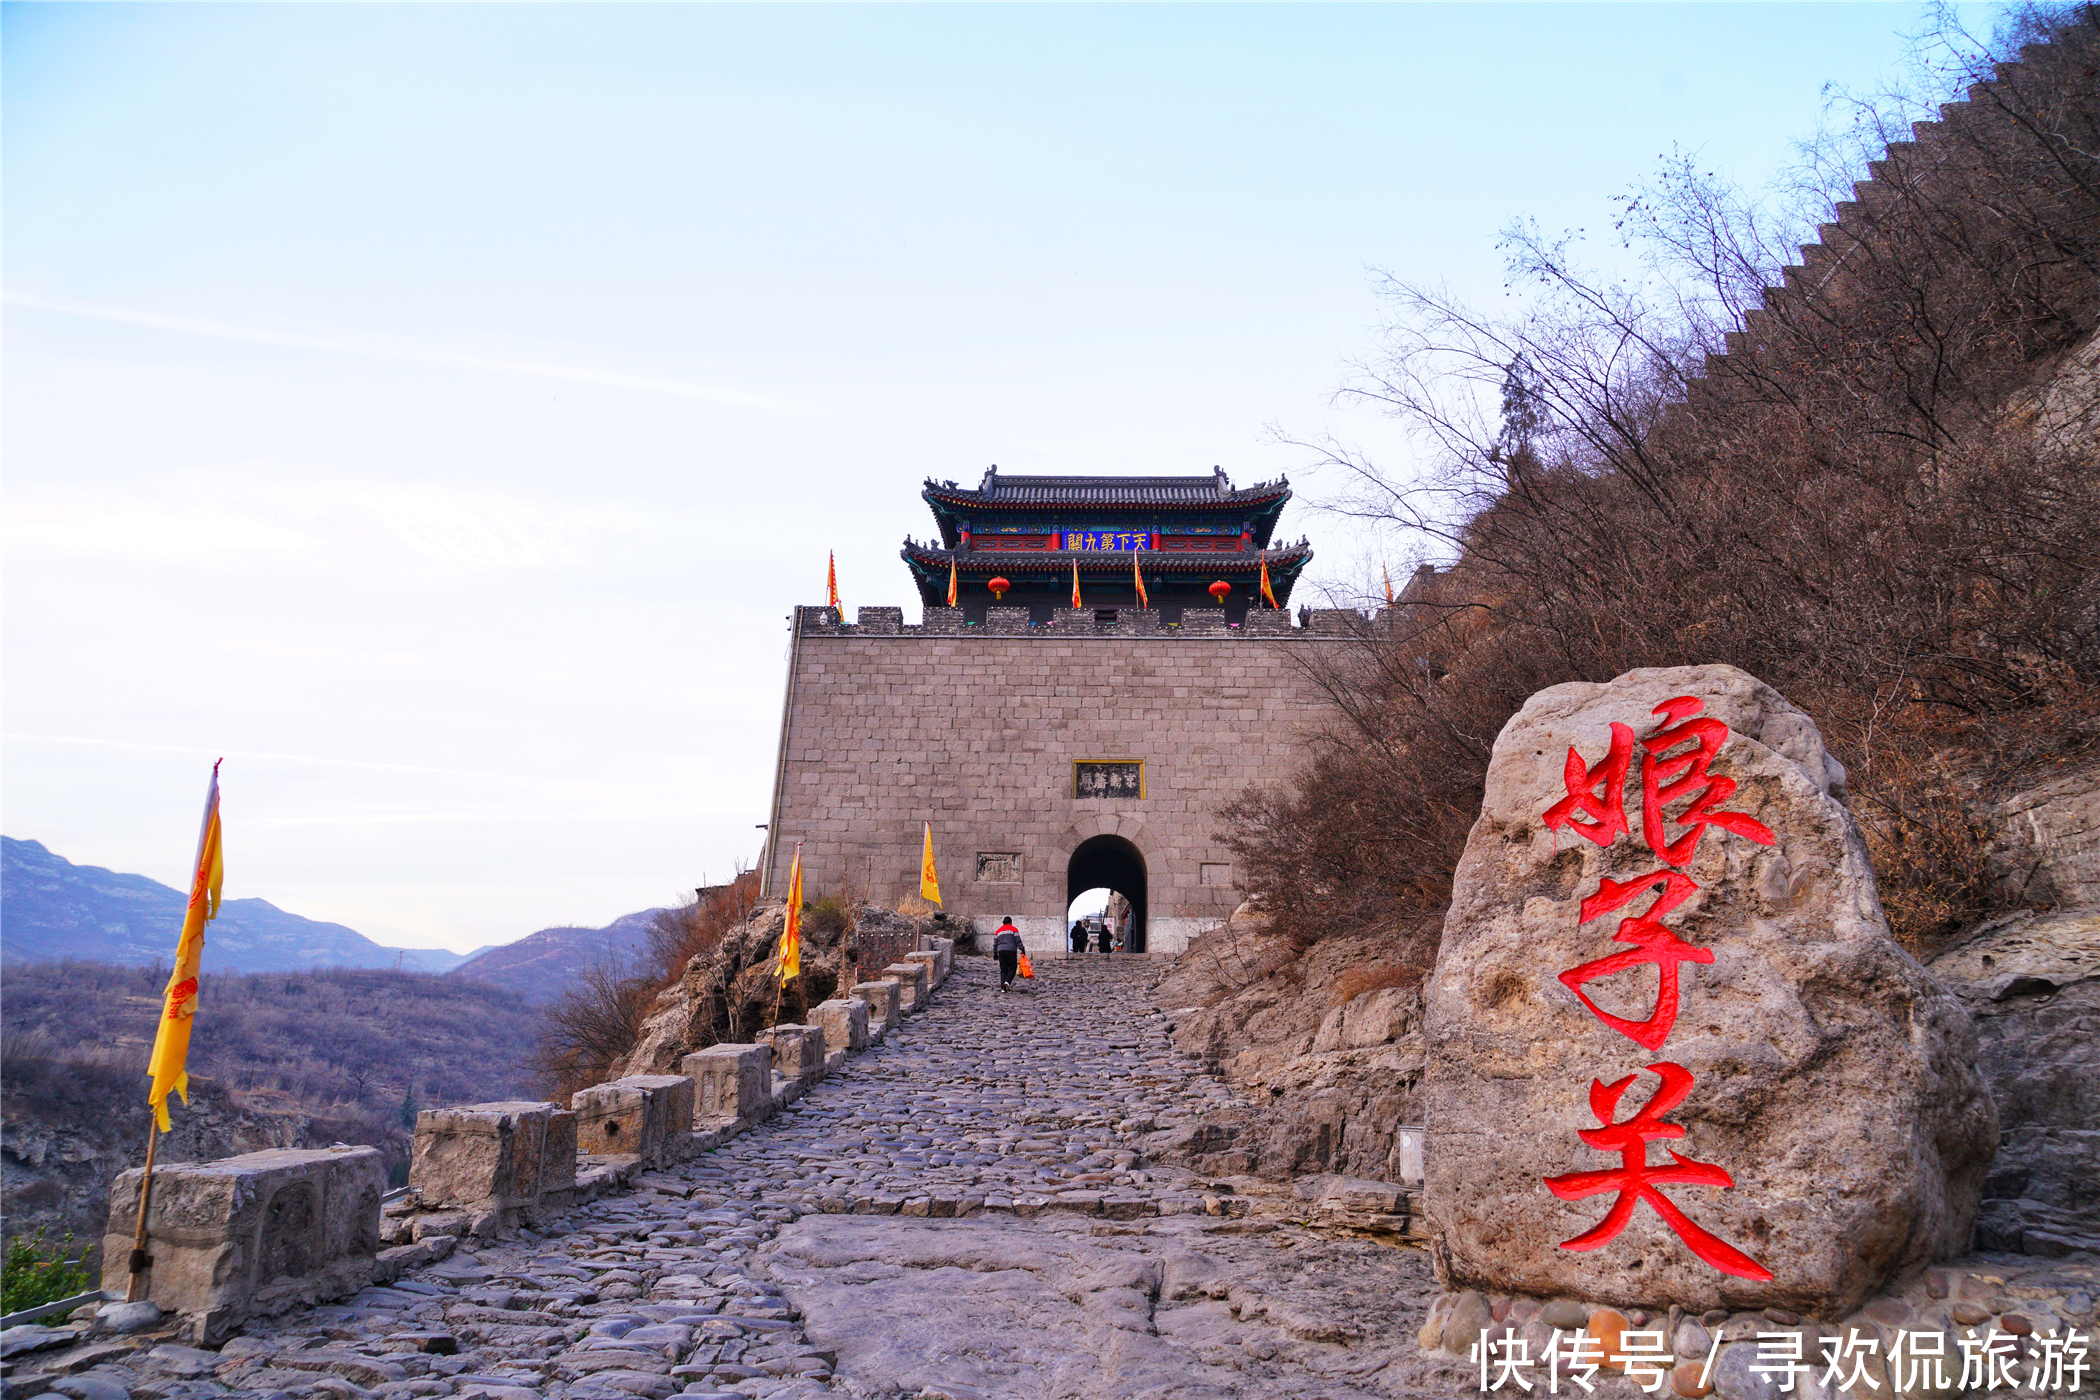 中国唯一公主名字命名的长城关口位于山西,是